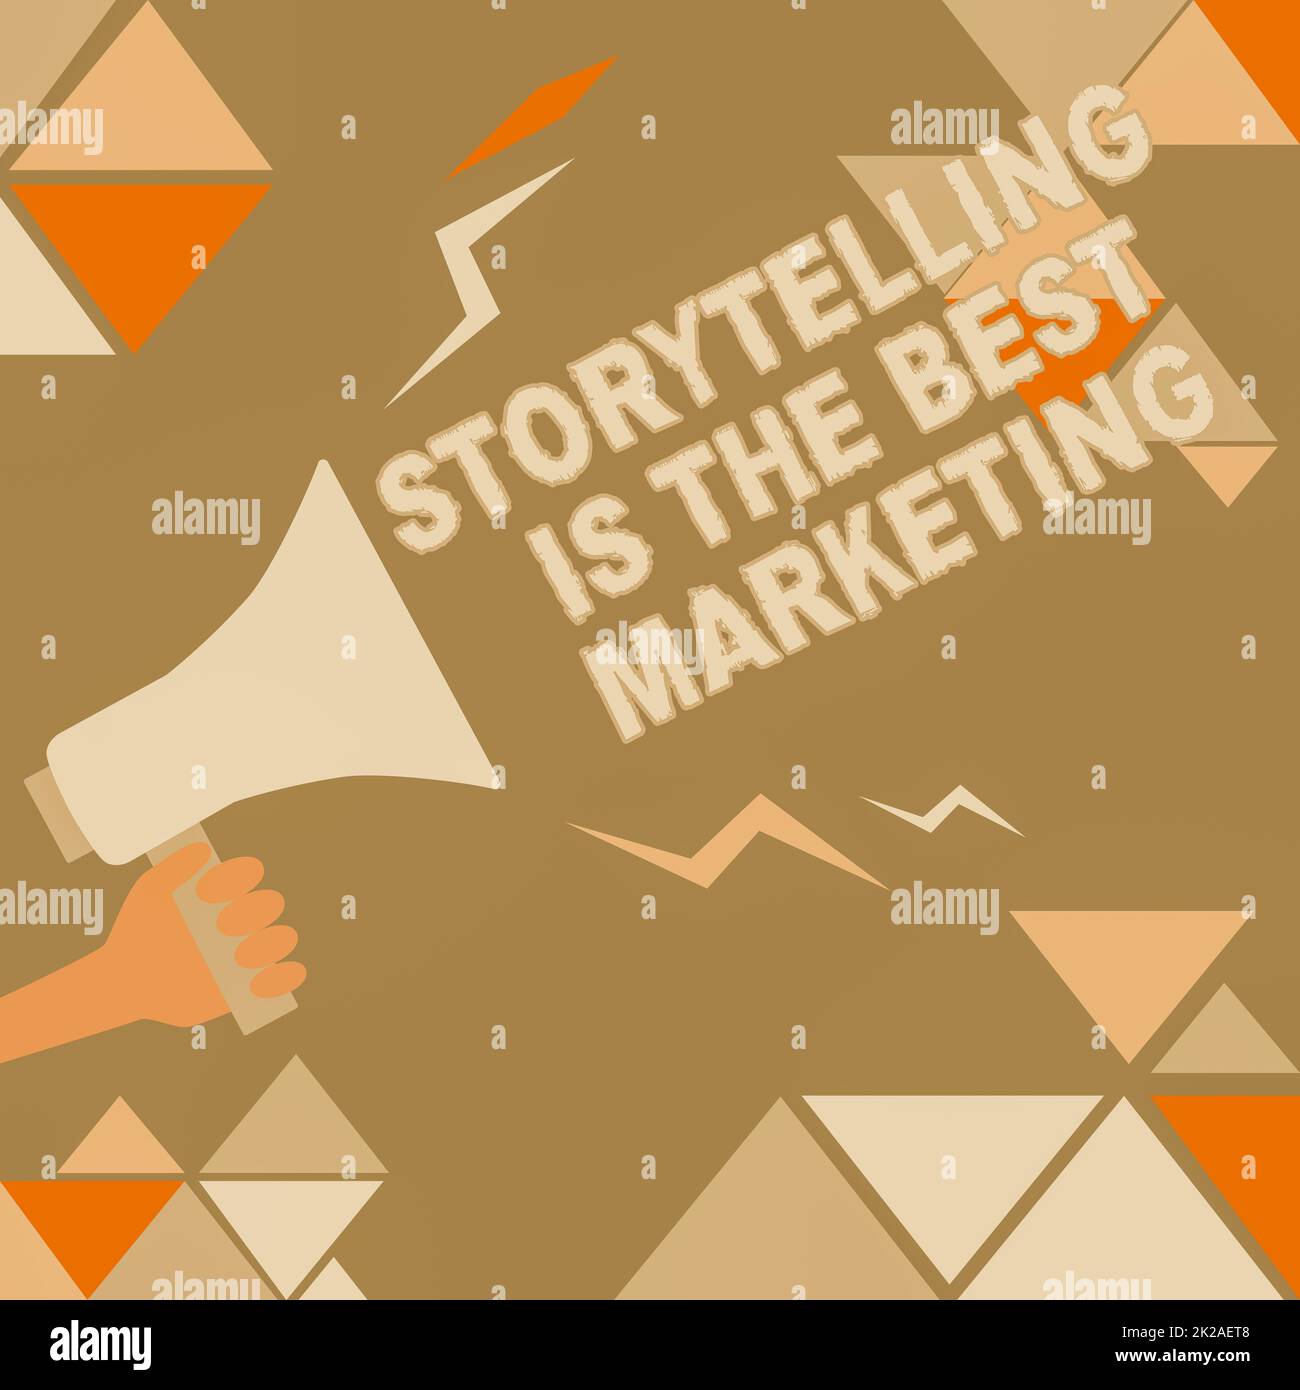 Text mit Inspiration Storytelling ist das beste Marketing. Business-Ideenunternehmen effektiver Marketingansatz Illustration einer lauten Ankündigung von Megaphone an die Öffentlichkeit. Stockfoto